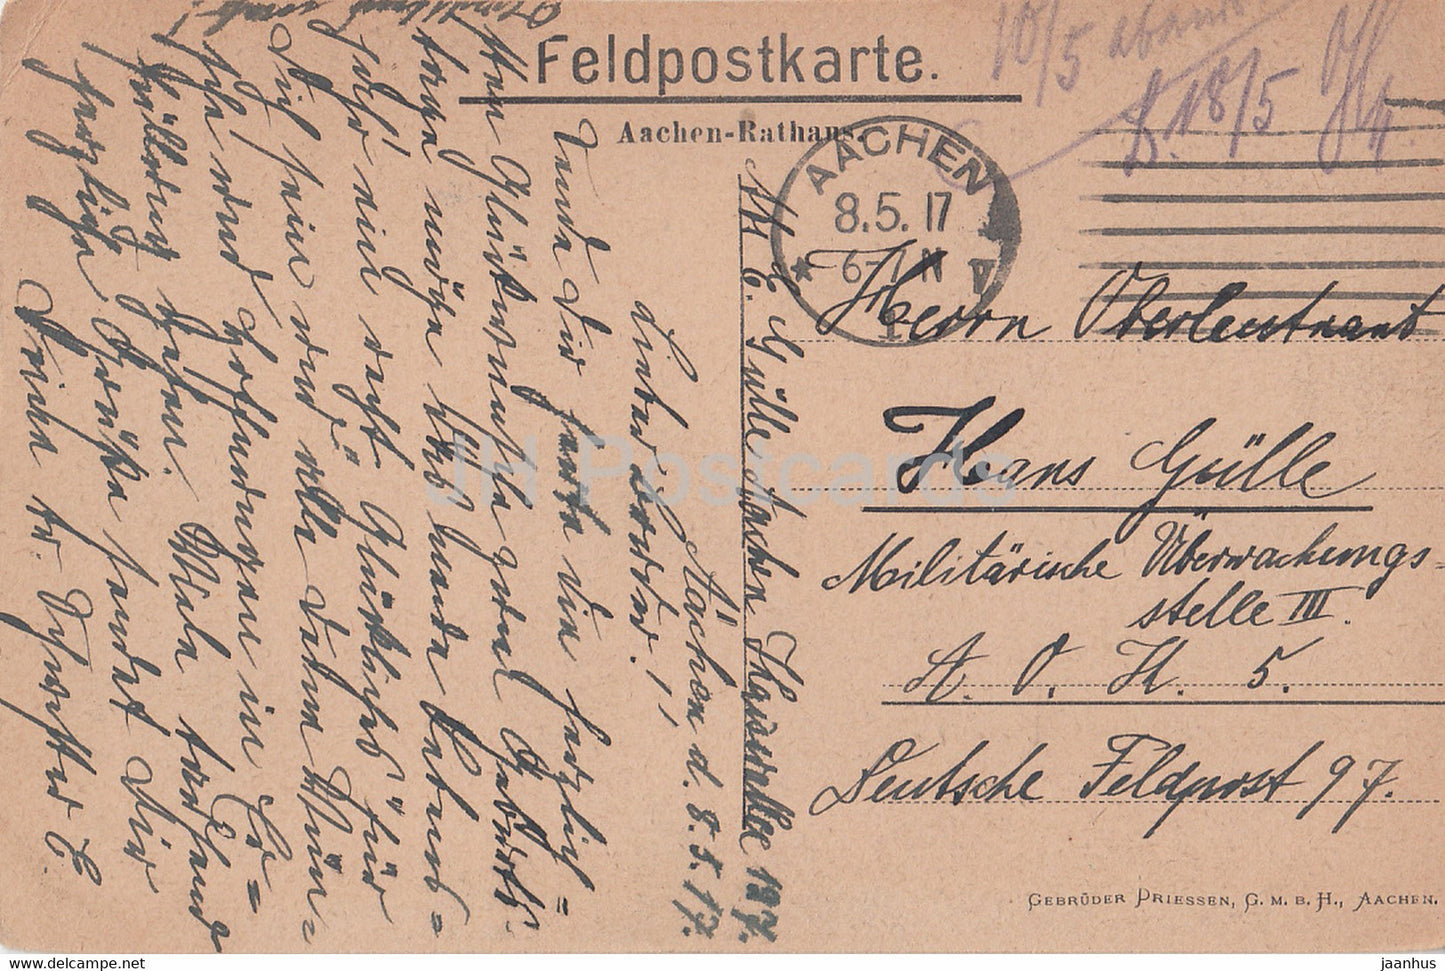 Aachen - Rathaus - Feldpostkarte - 2200 - alte Postkarte - 1917 - Deutschland - gebraucht